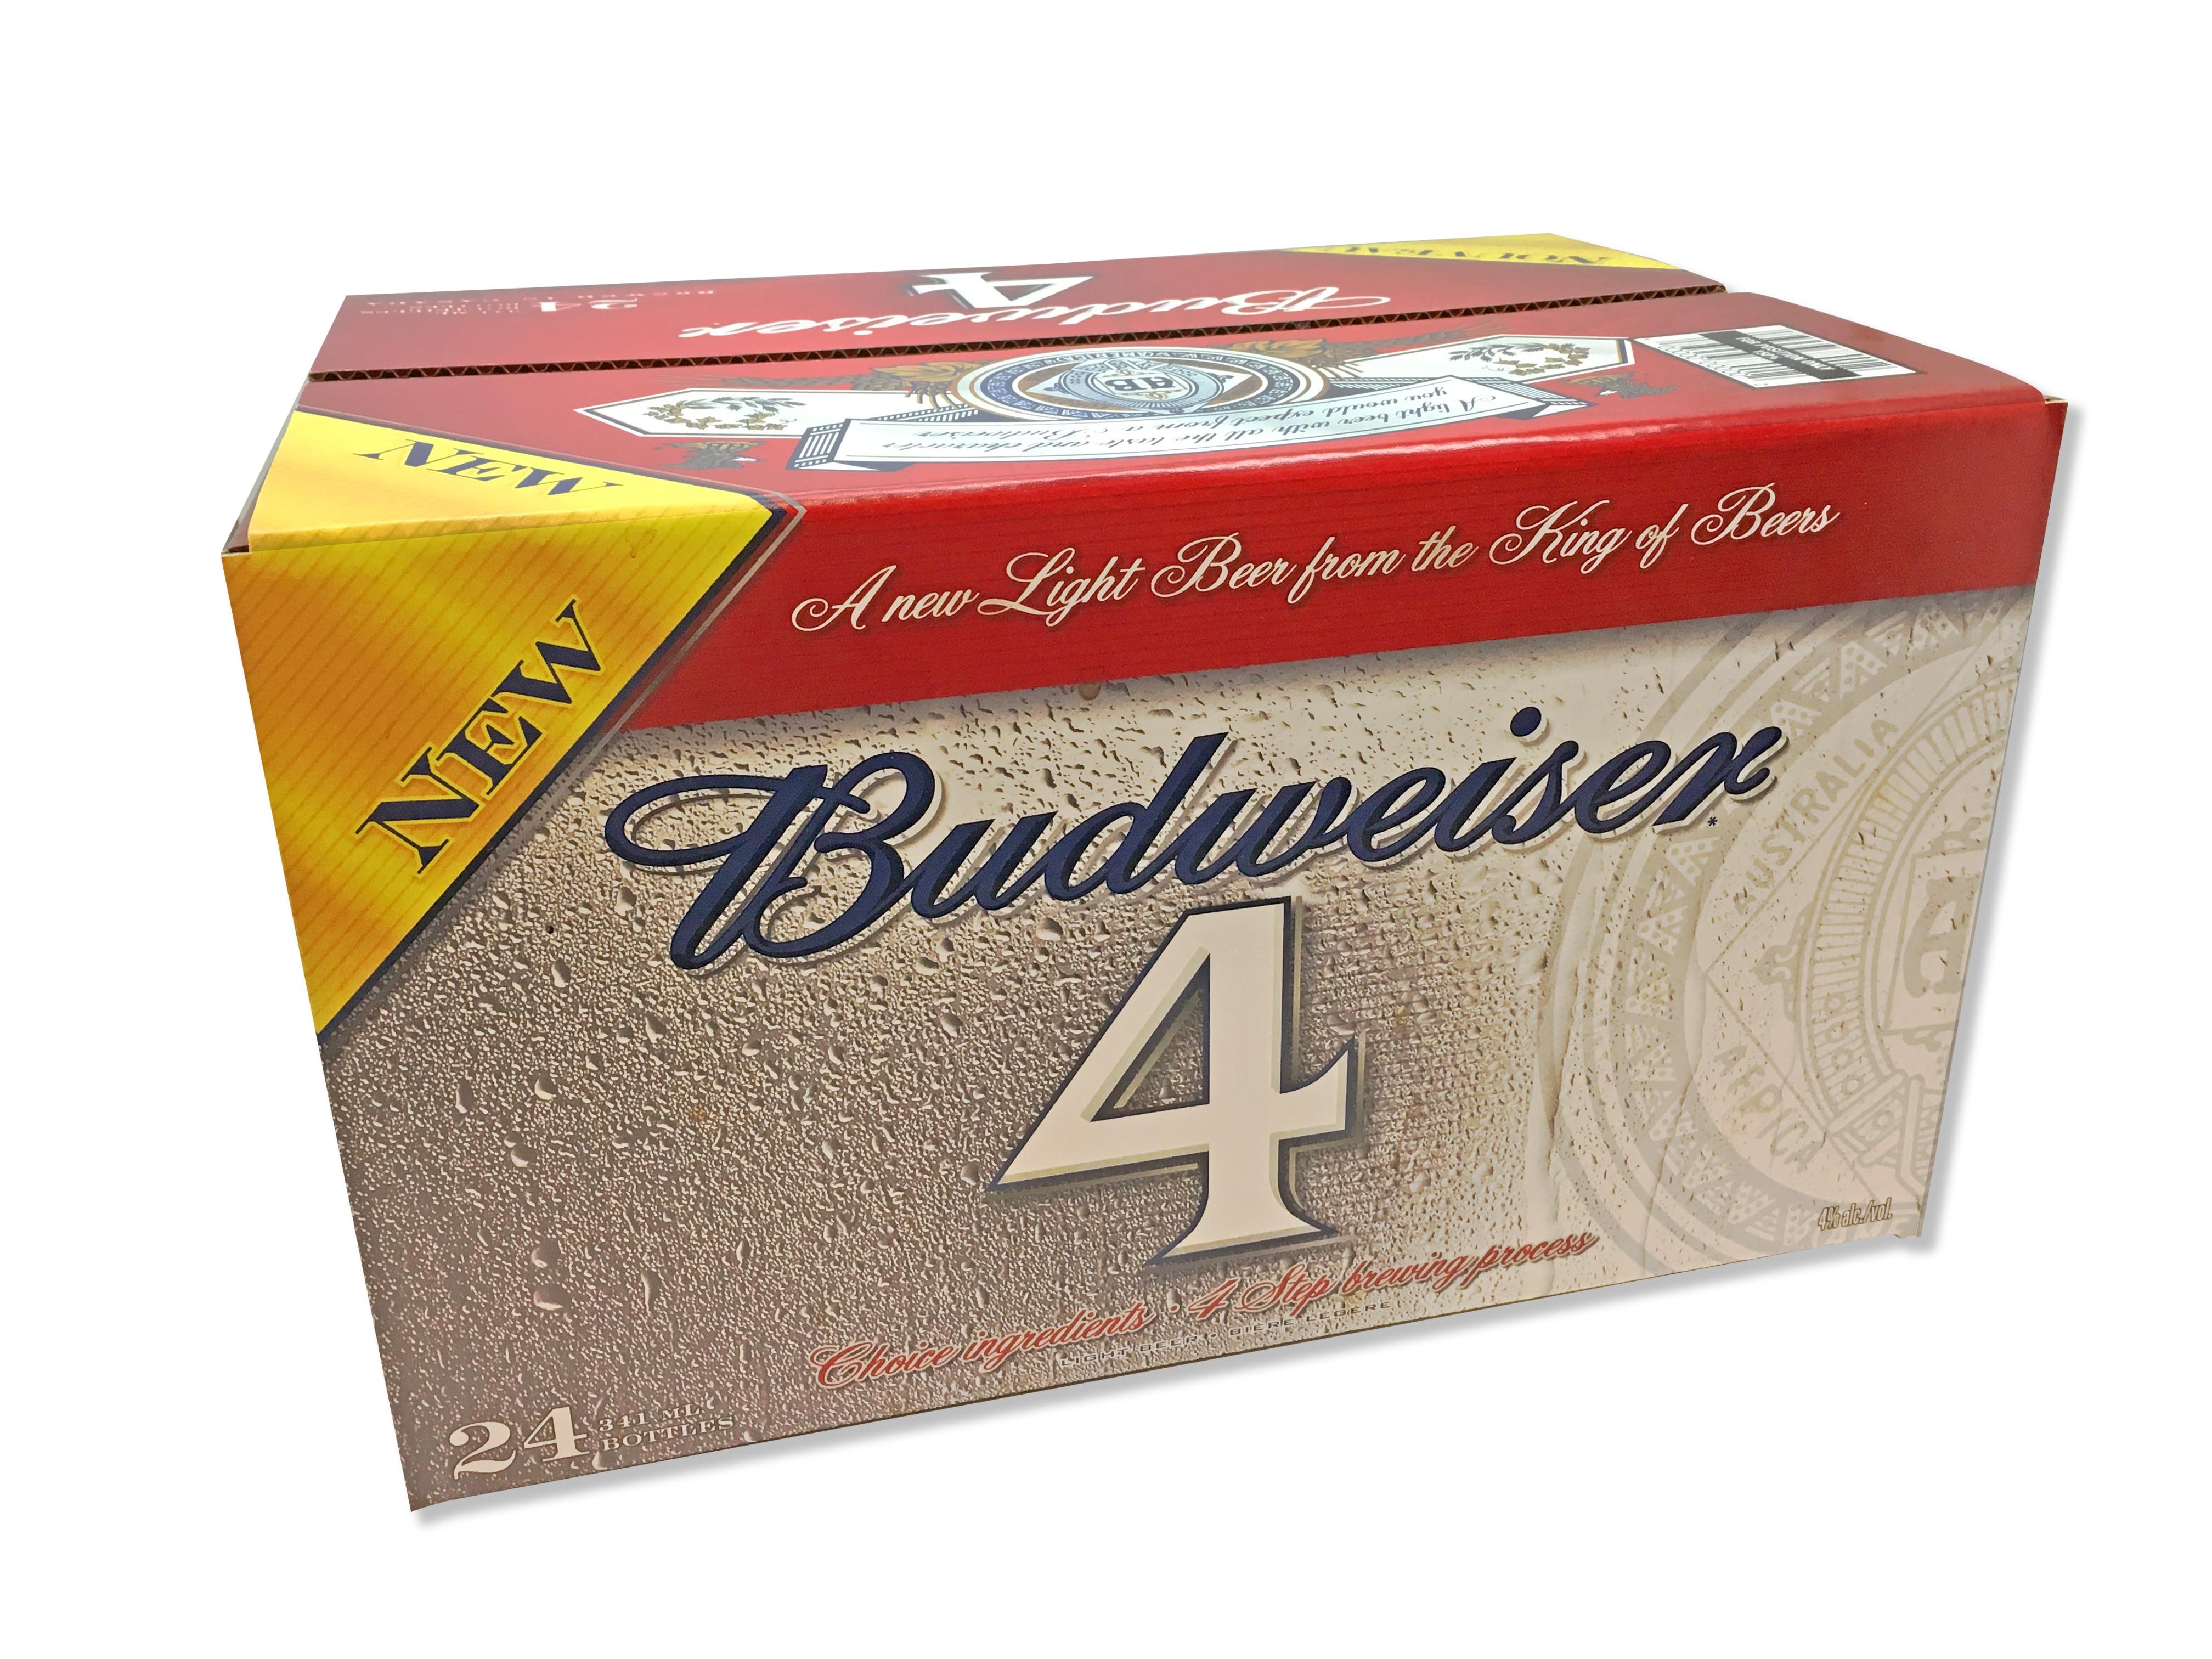 https://0901.nccdn.net/4_2/000/000/048/4f7/Budweiser-4-beer-box-4032x3024.jpg